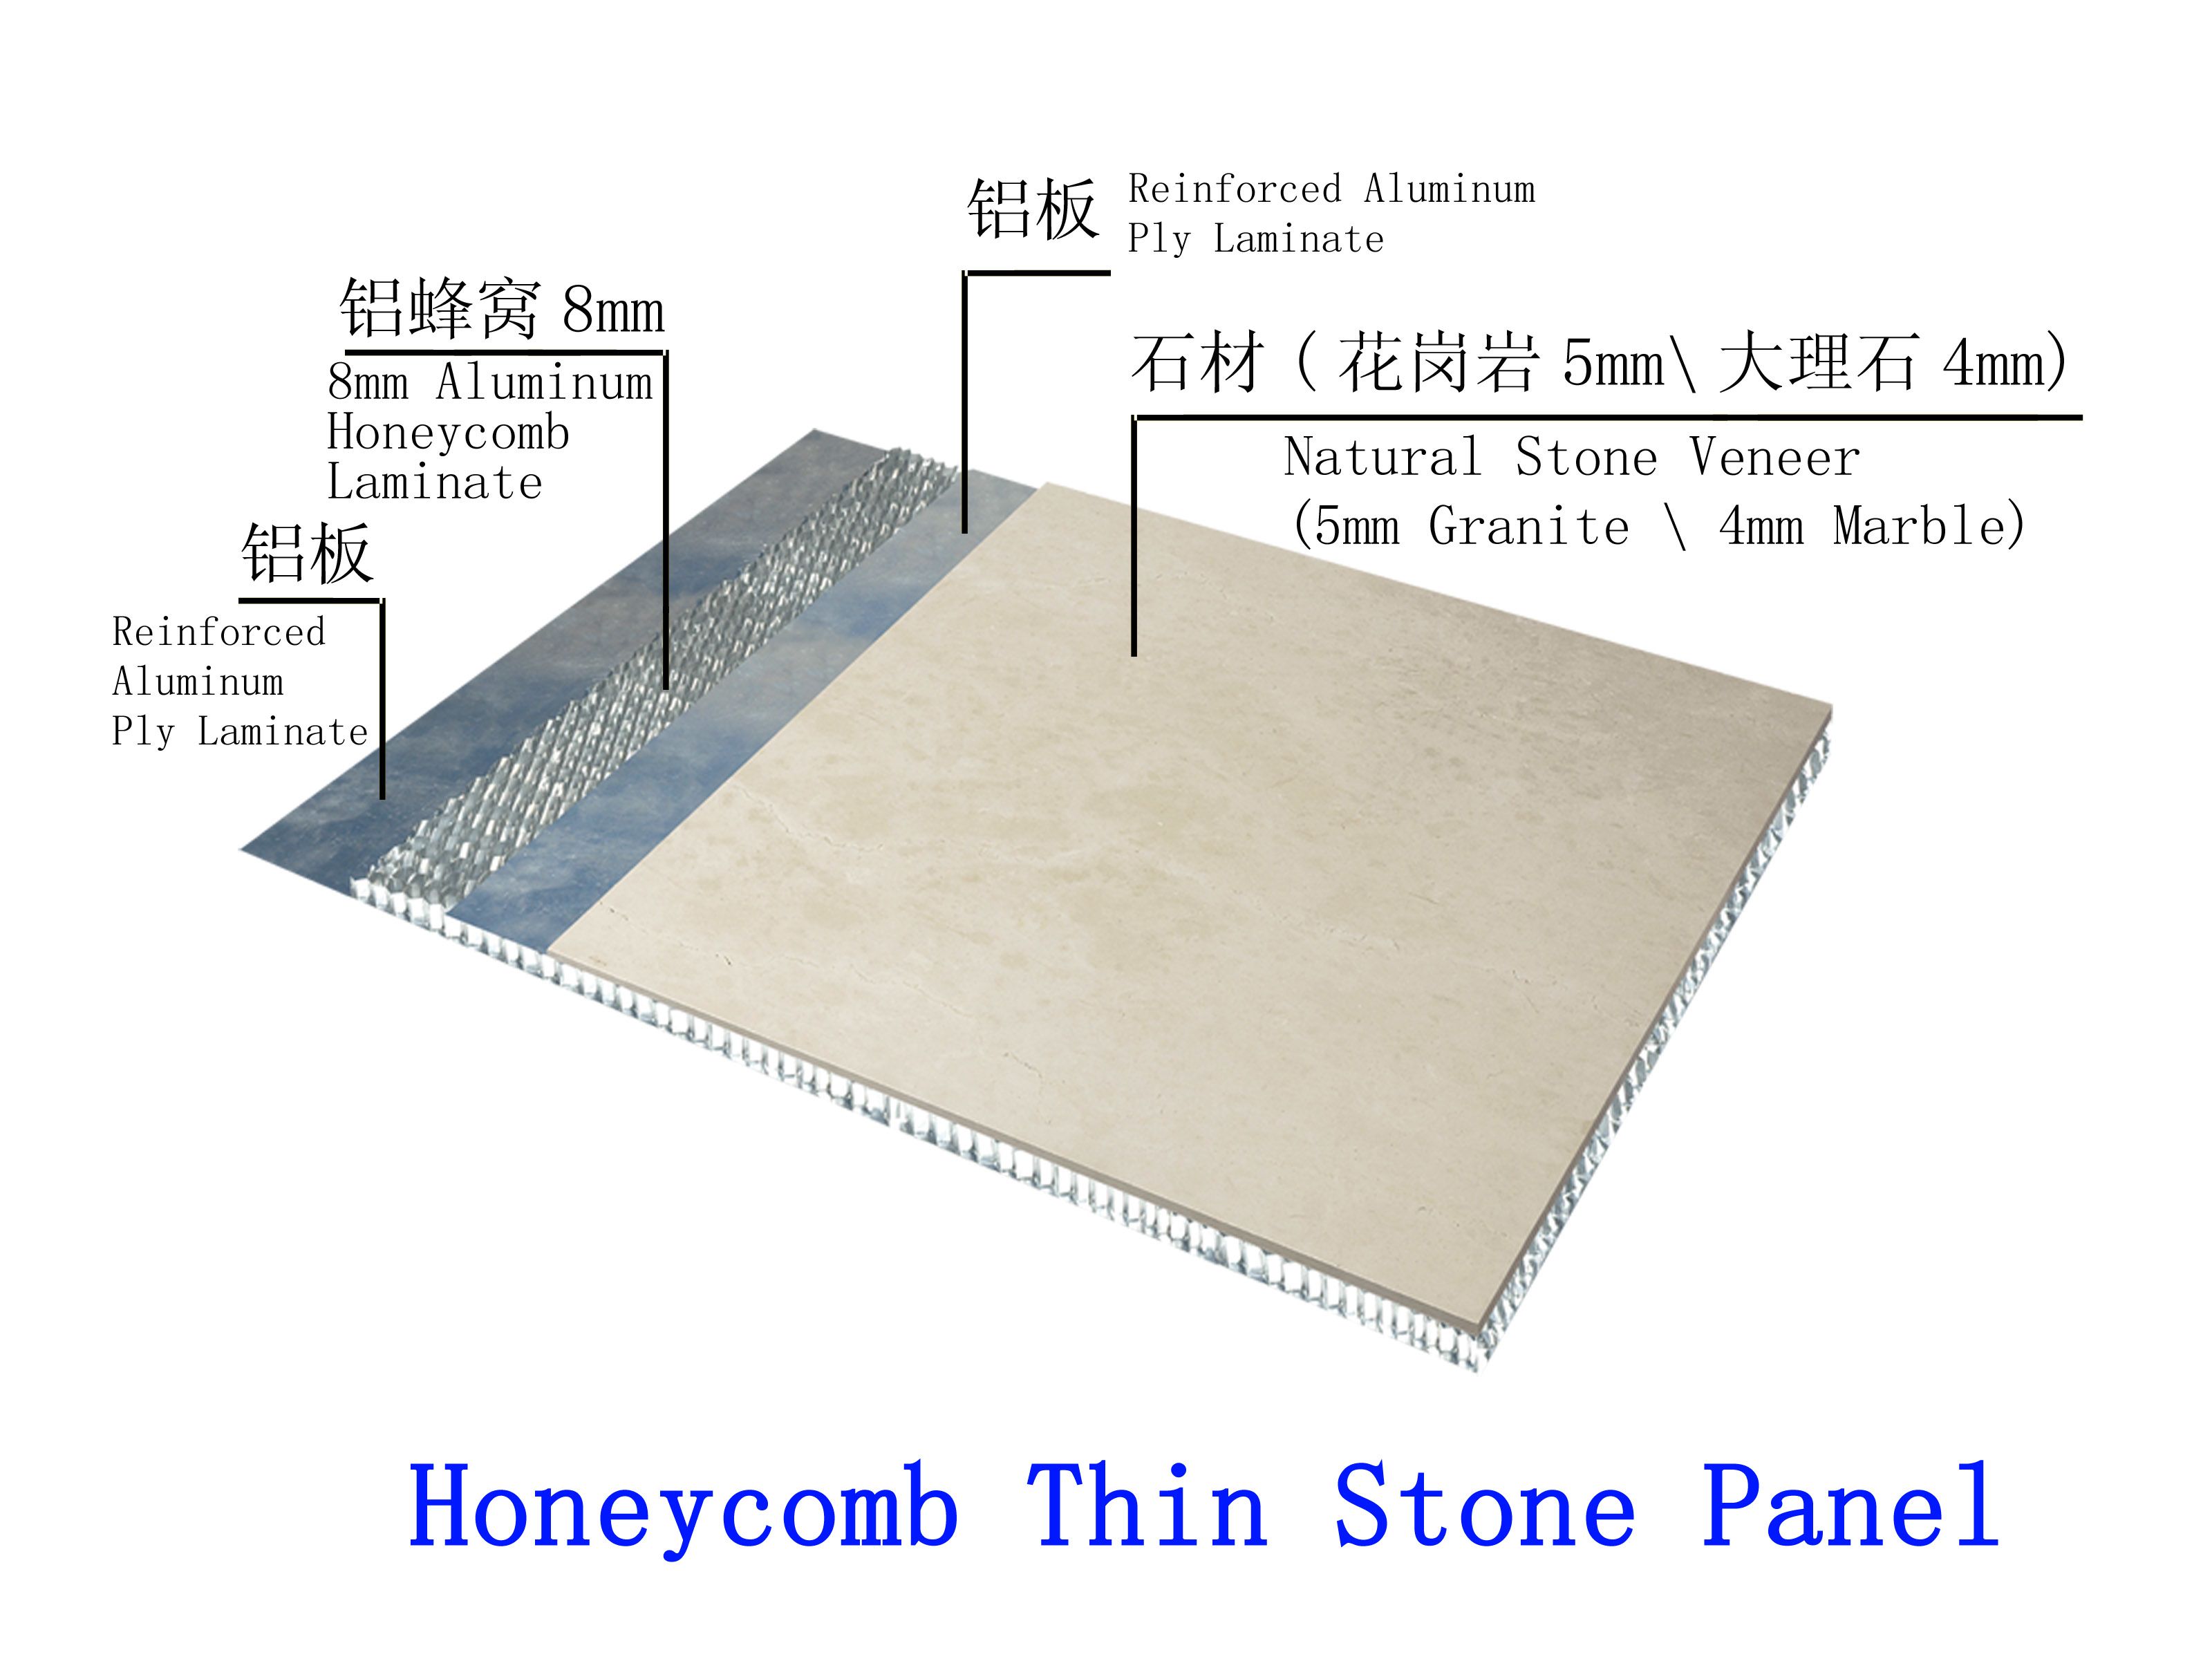 Honeycomb thin stone panel.jpg